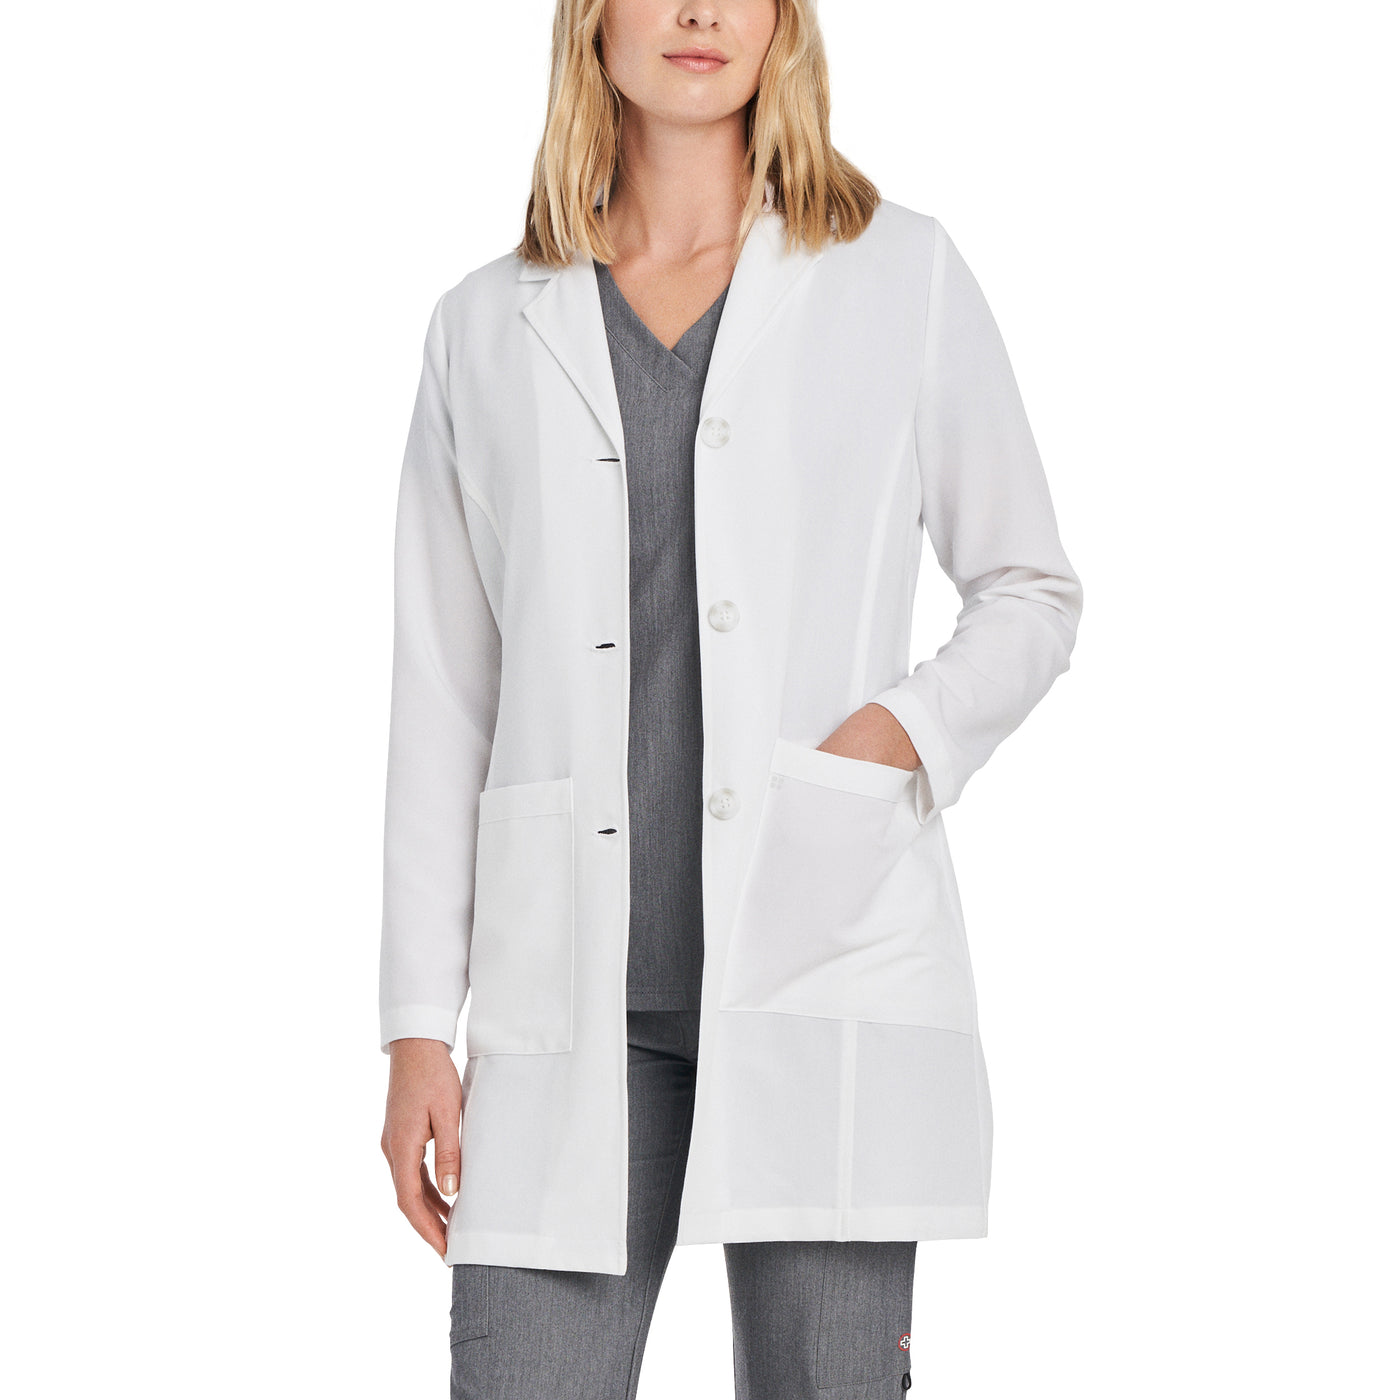 White - White Cross V-Tess Women's 4-Pocket Mid Length Lab Coat